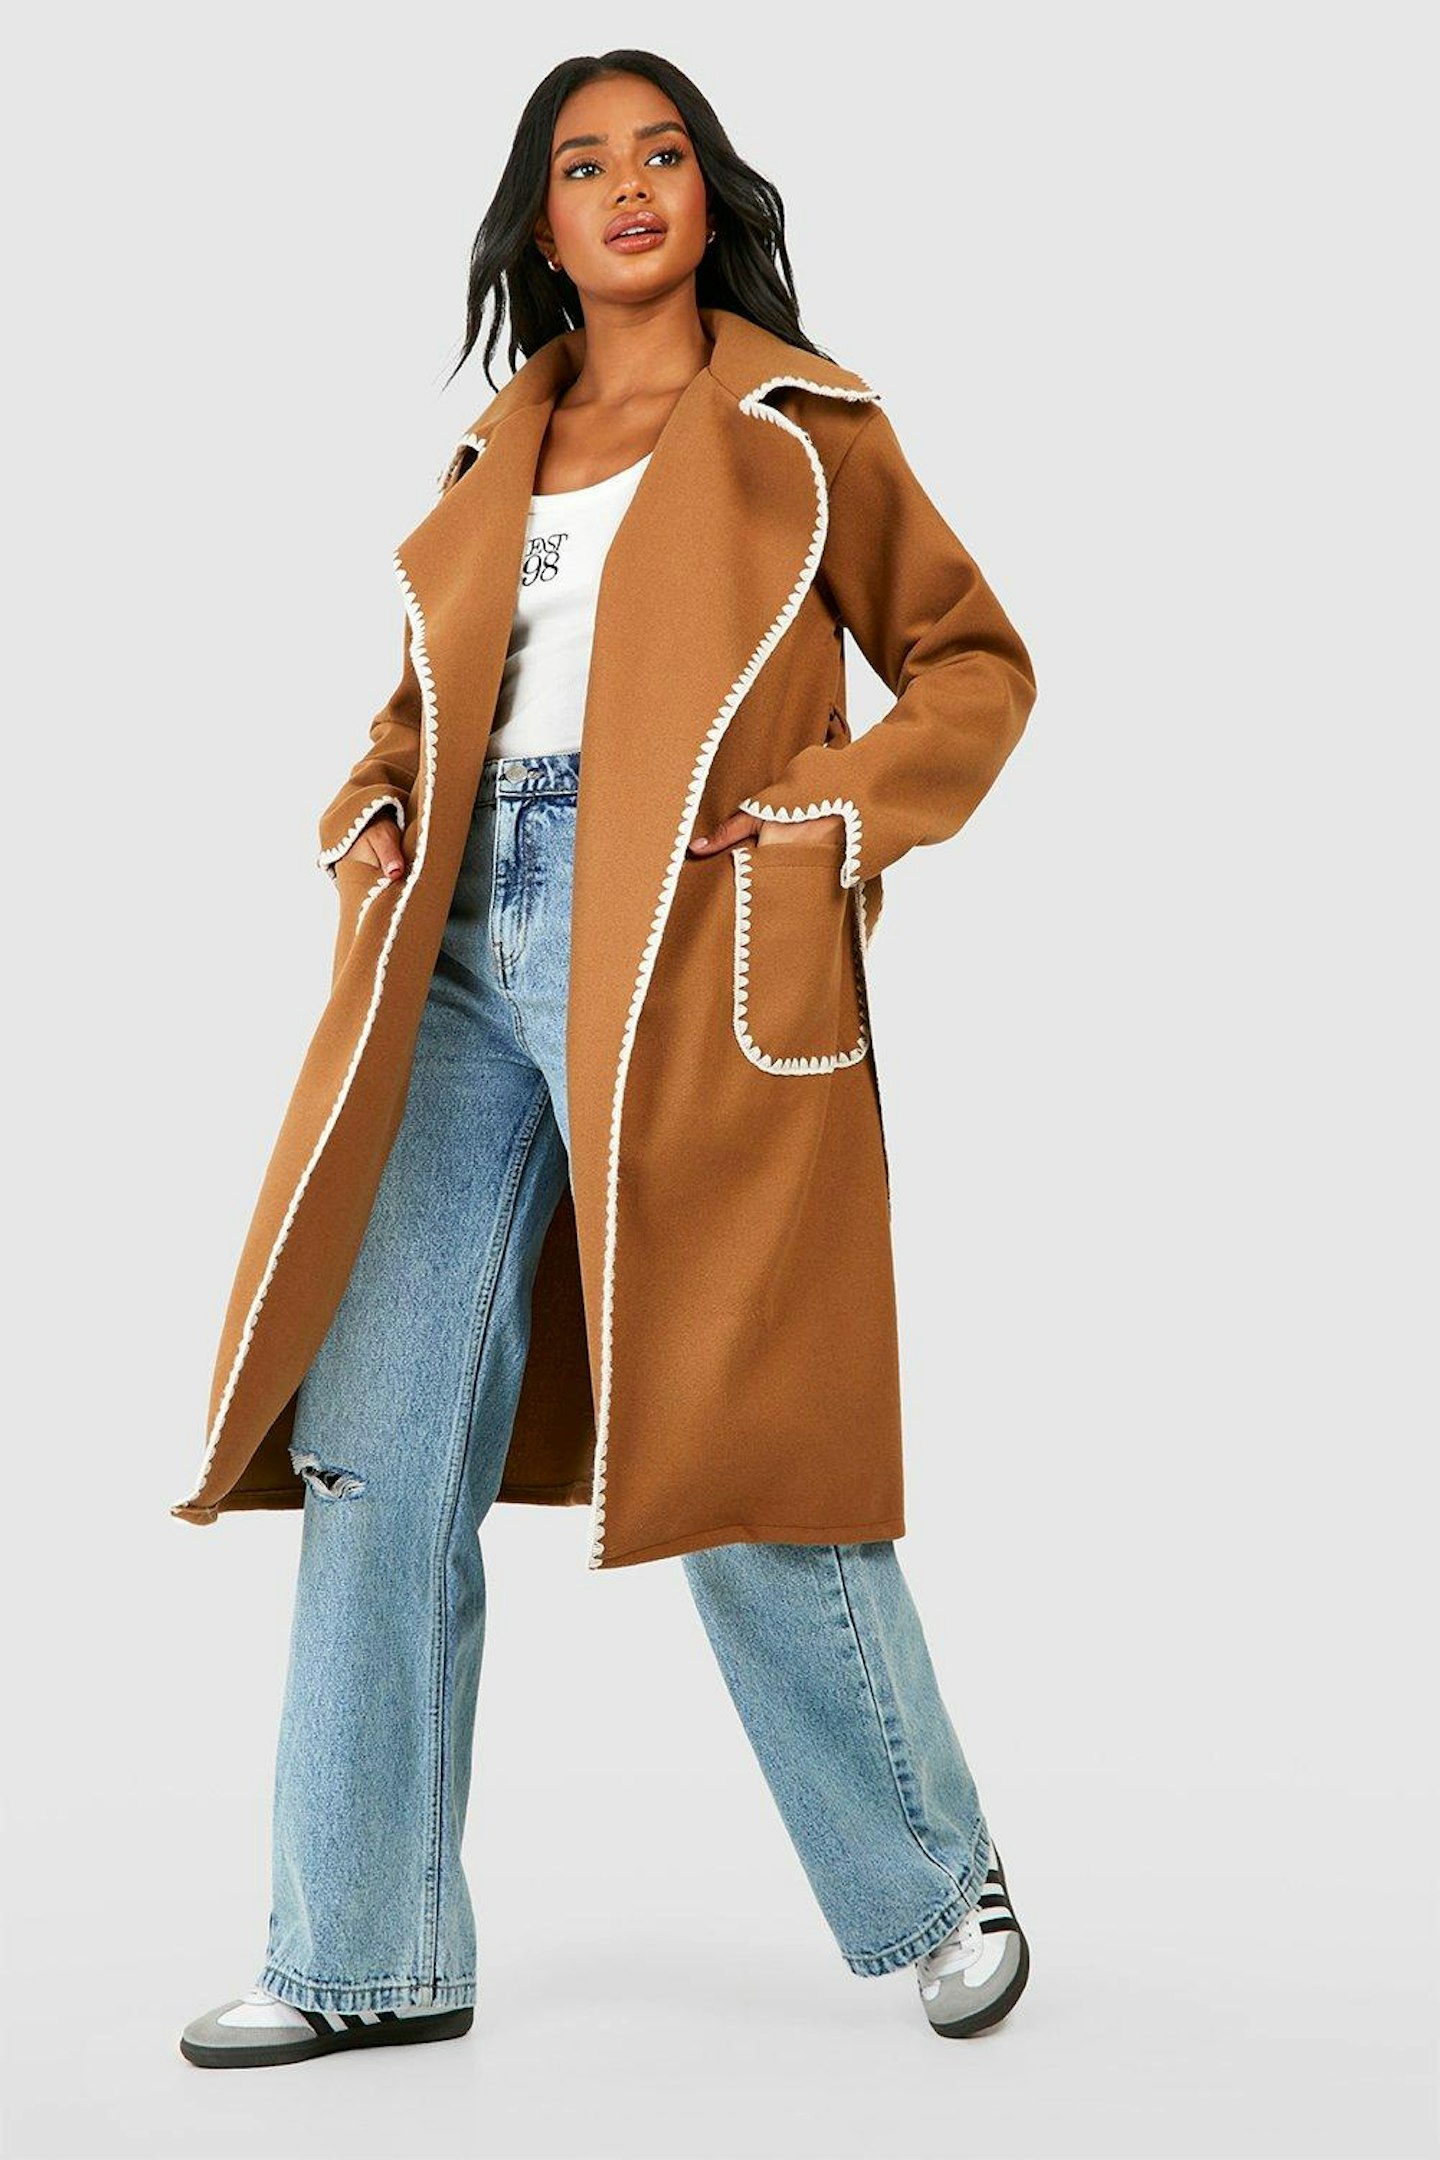 girl in camel coat